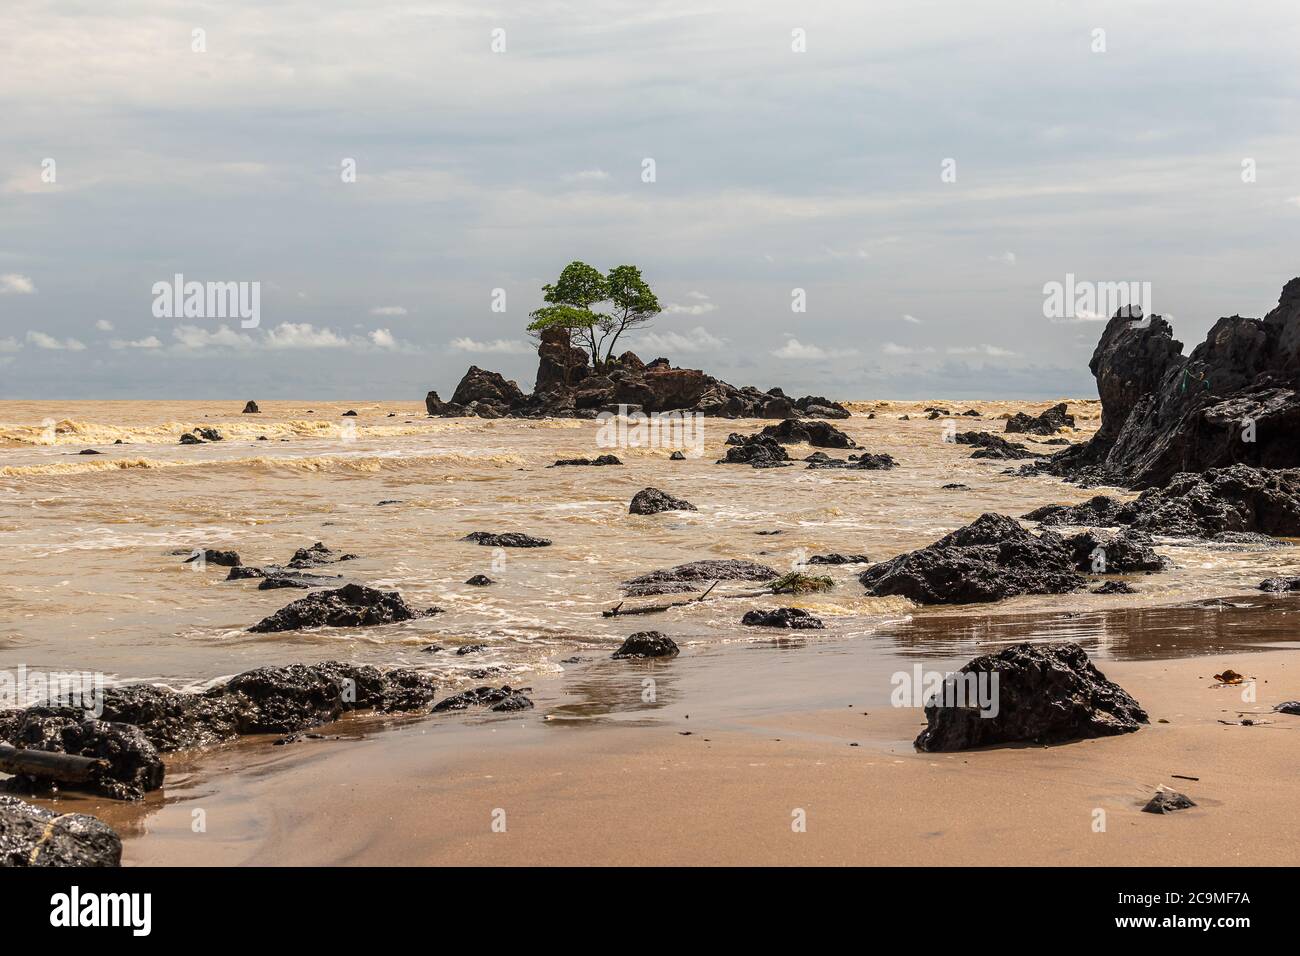 Afrikas Goldküste mit gelbem Meer und einer Insel mit schwarzen Felsen, wo ein Baum wächst in rauen Bedingungen, der Ort befindet sich in Ghana Westafrika Stockfoto